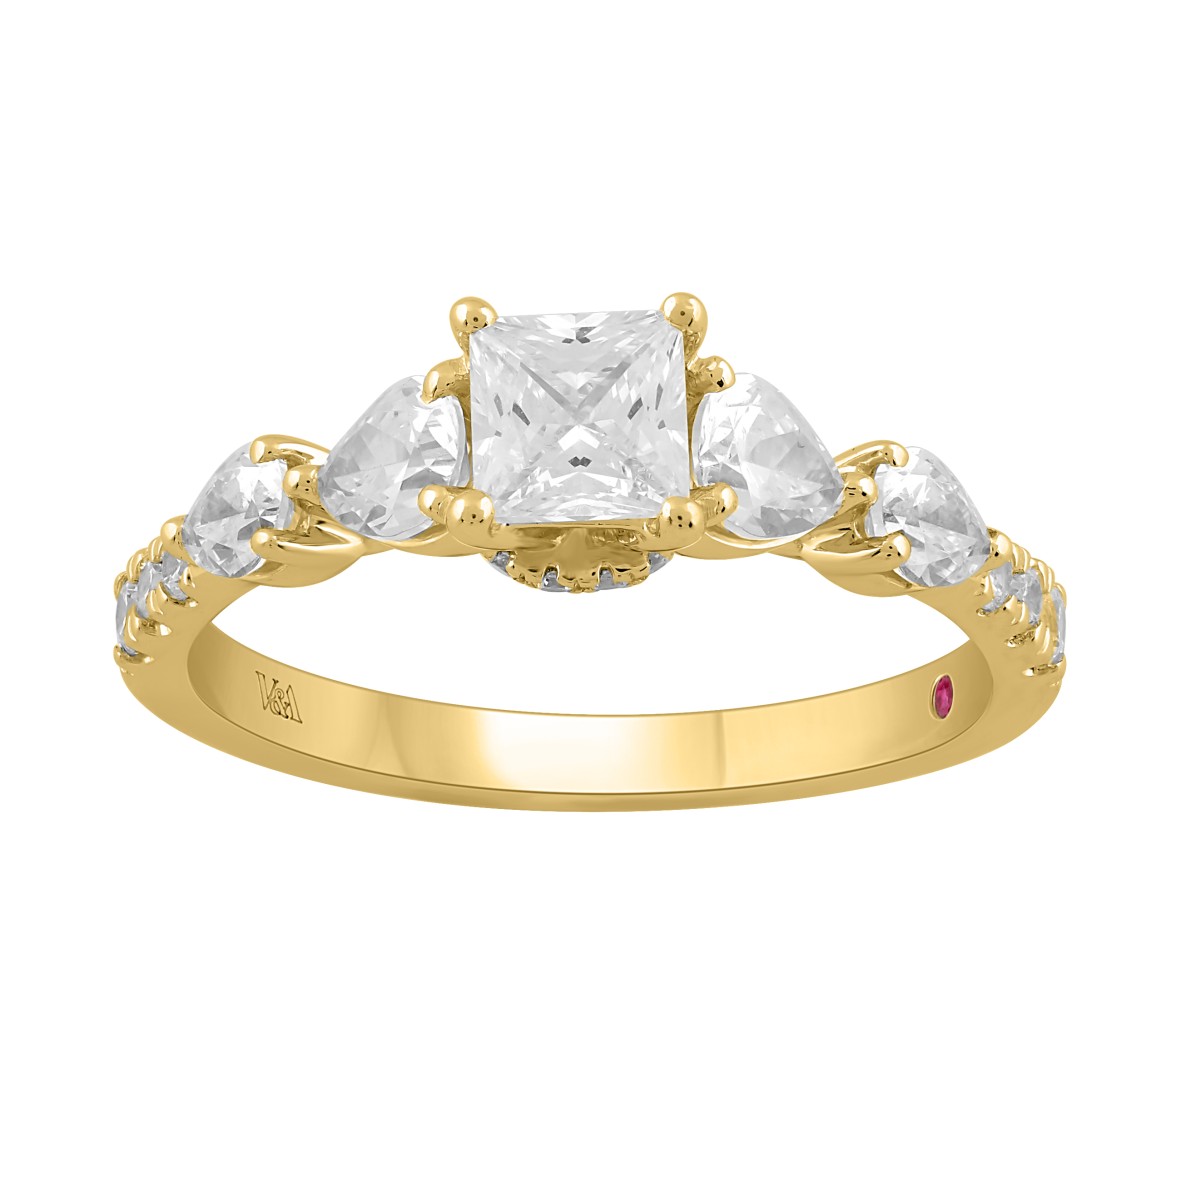 18K YELLOW GOLD 1 1/4CT ROUND/PEAR/PRINCESS DIAMOND LADIES RING (CENTER STONE PRINCESS DIAMOND 1/2CT)